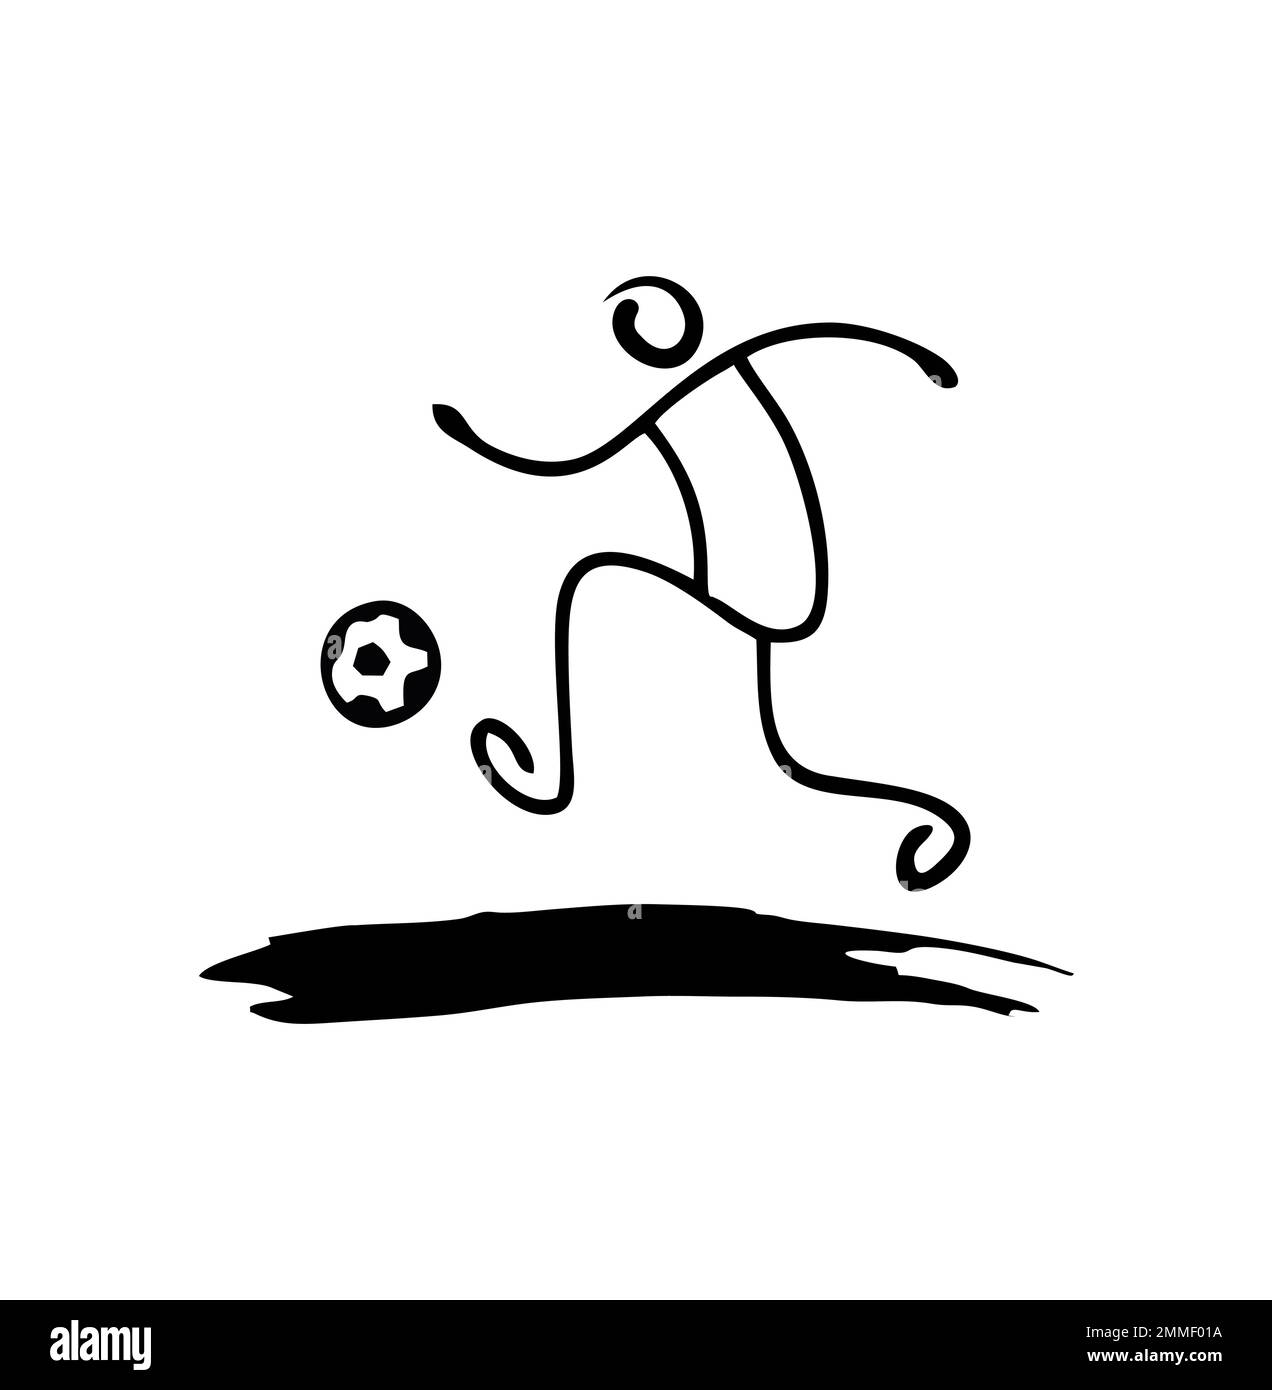 Illustration vectorielle de l'enseigne du logo de la Footbal dribbling d'Stickman Illustration de Vecteur